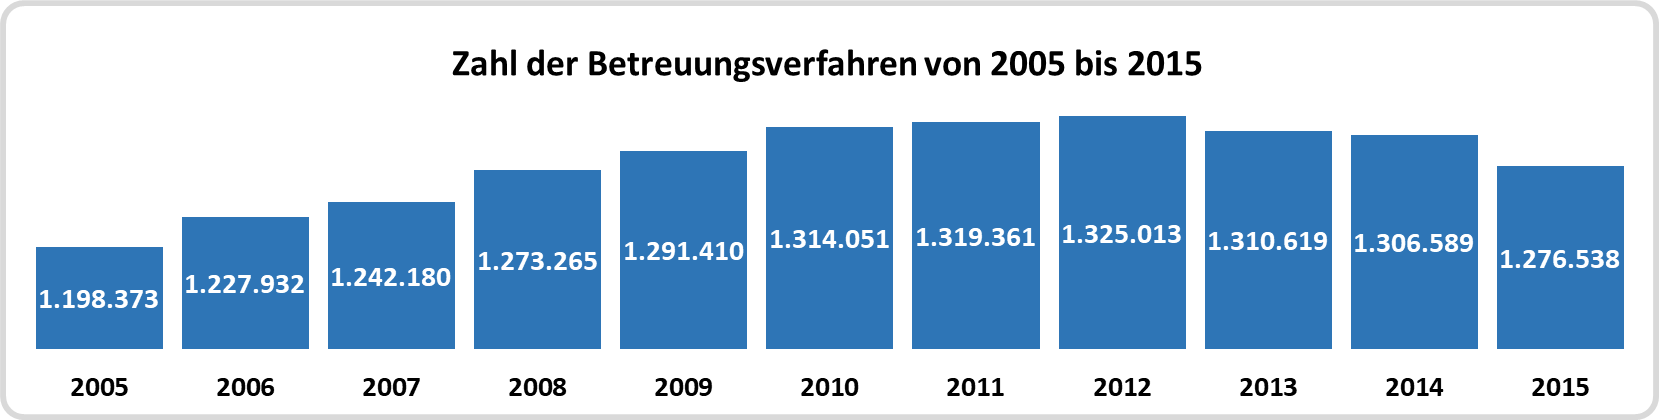 Zahl der gerichtlichen Betreuungsverfahren von 2005 bis 2015